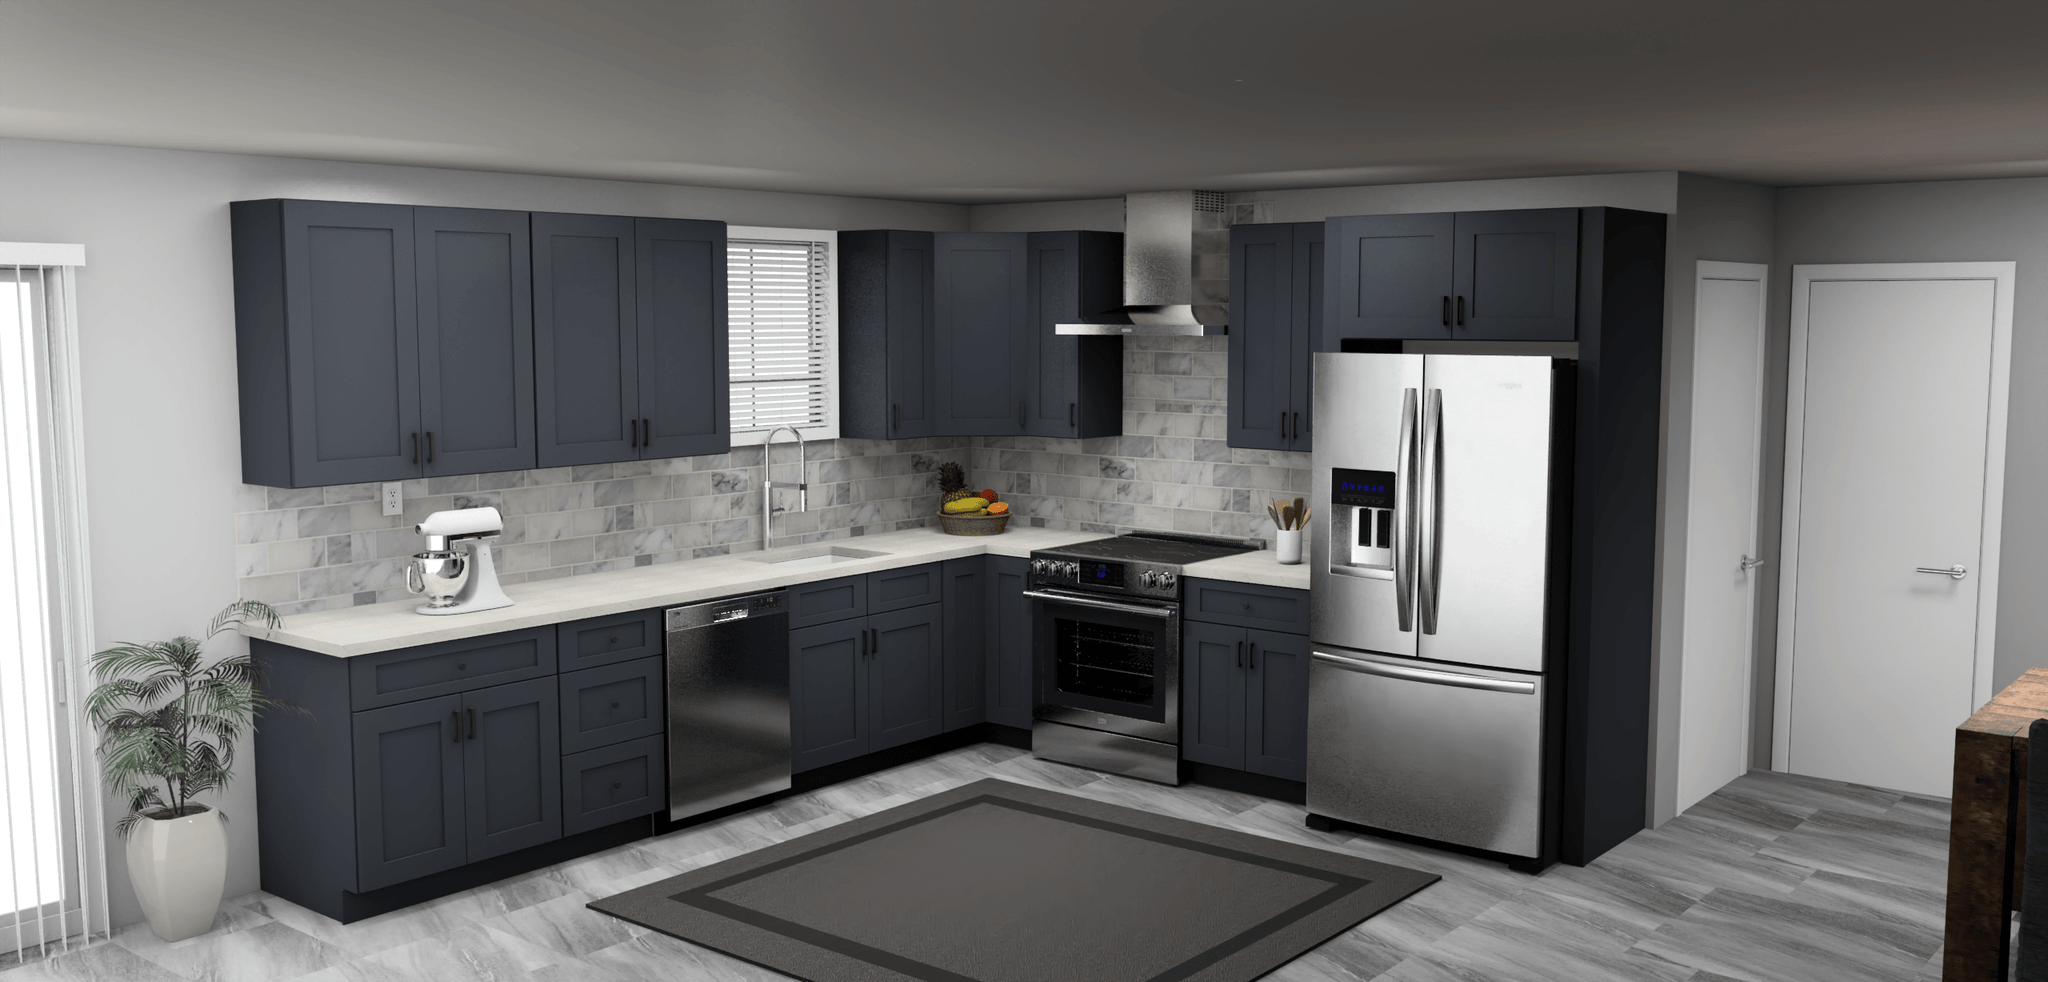 Fabuwood Allure Galaxy Indigo 12 x 11 L Shaped Kitchen Main Layout Photo